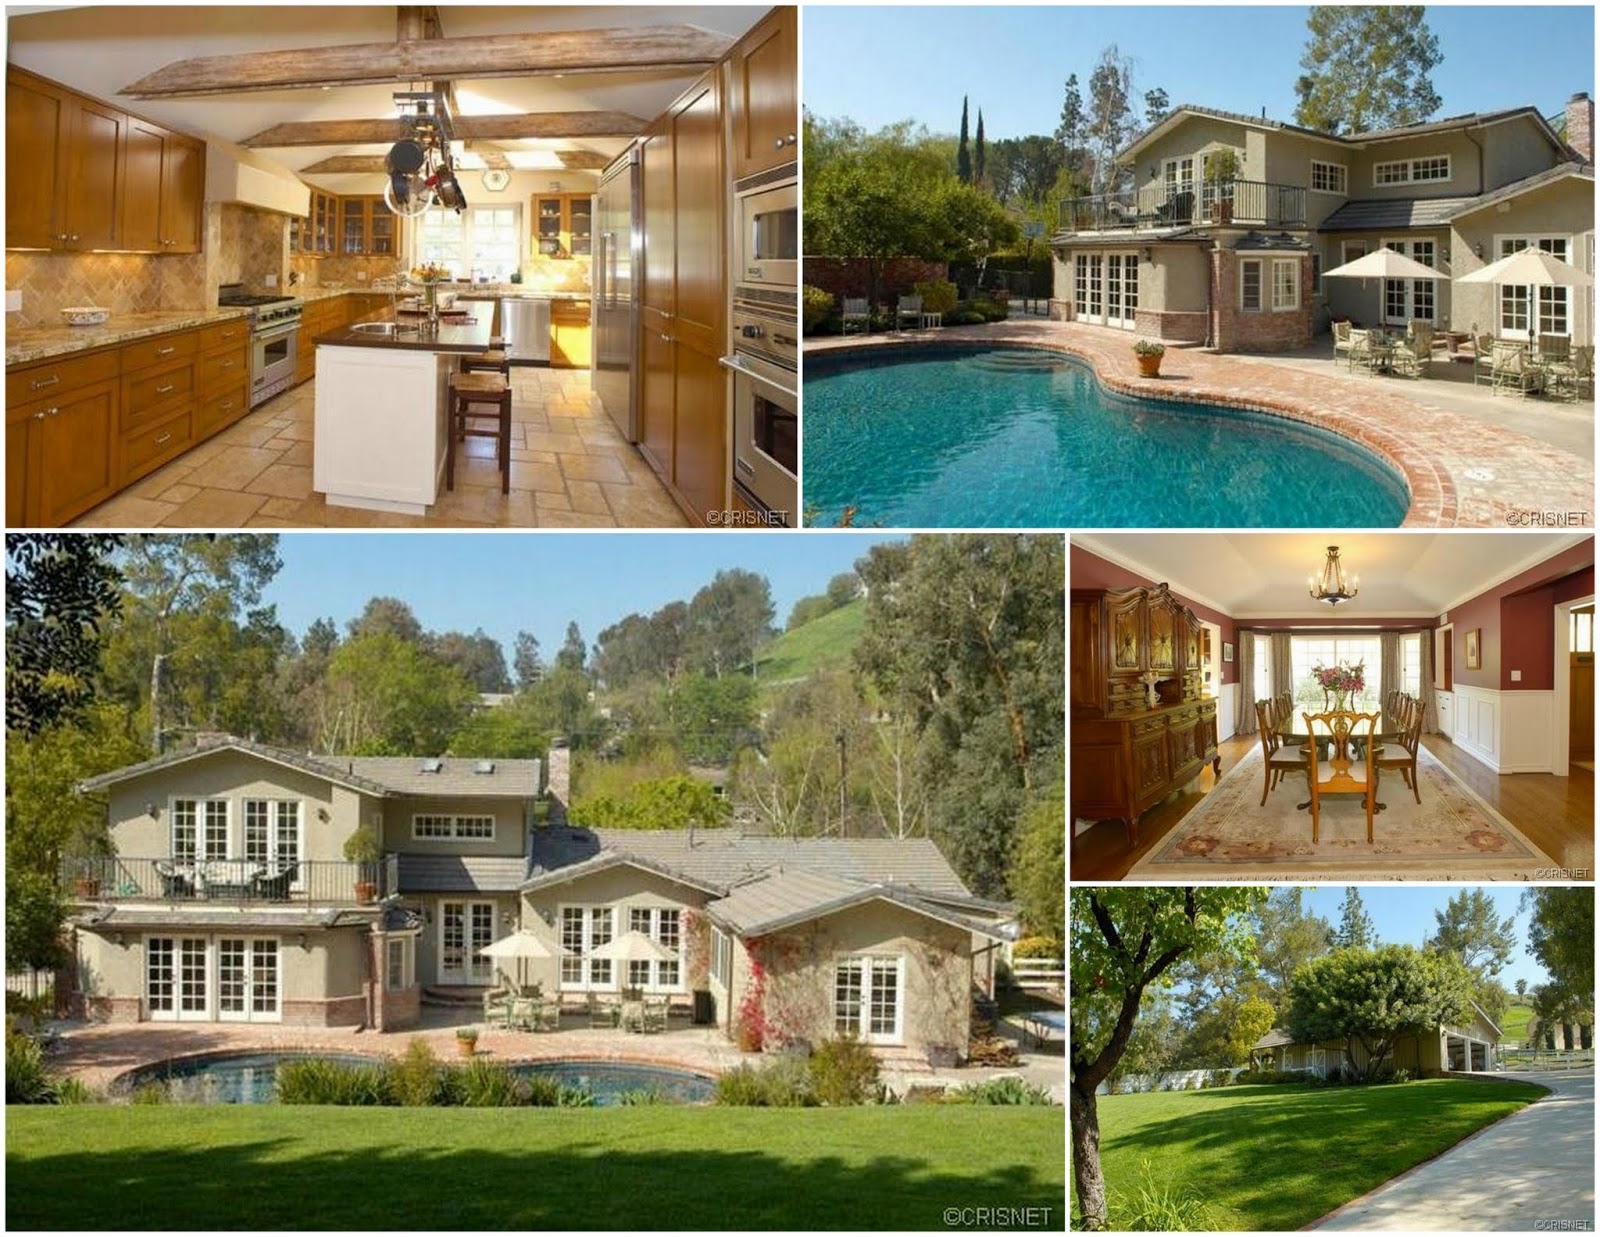 LeAnn Rimes, Eddie Cibrian House: Photos of California Home